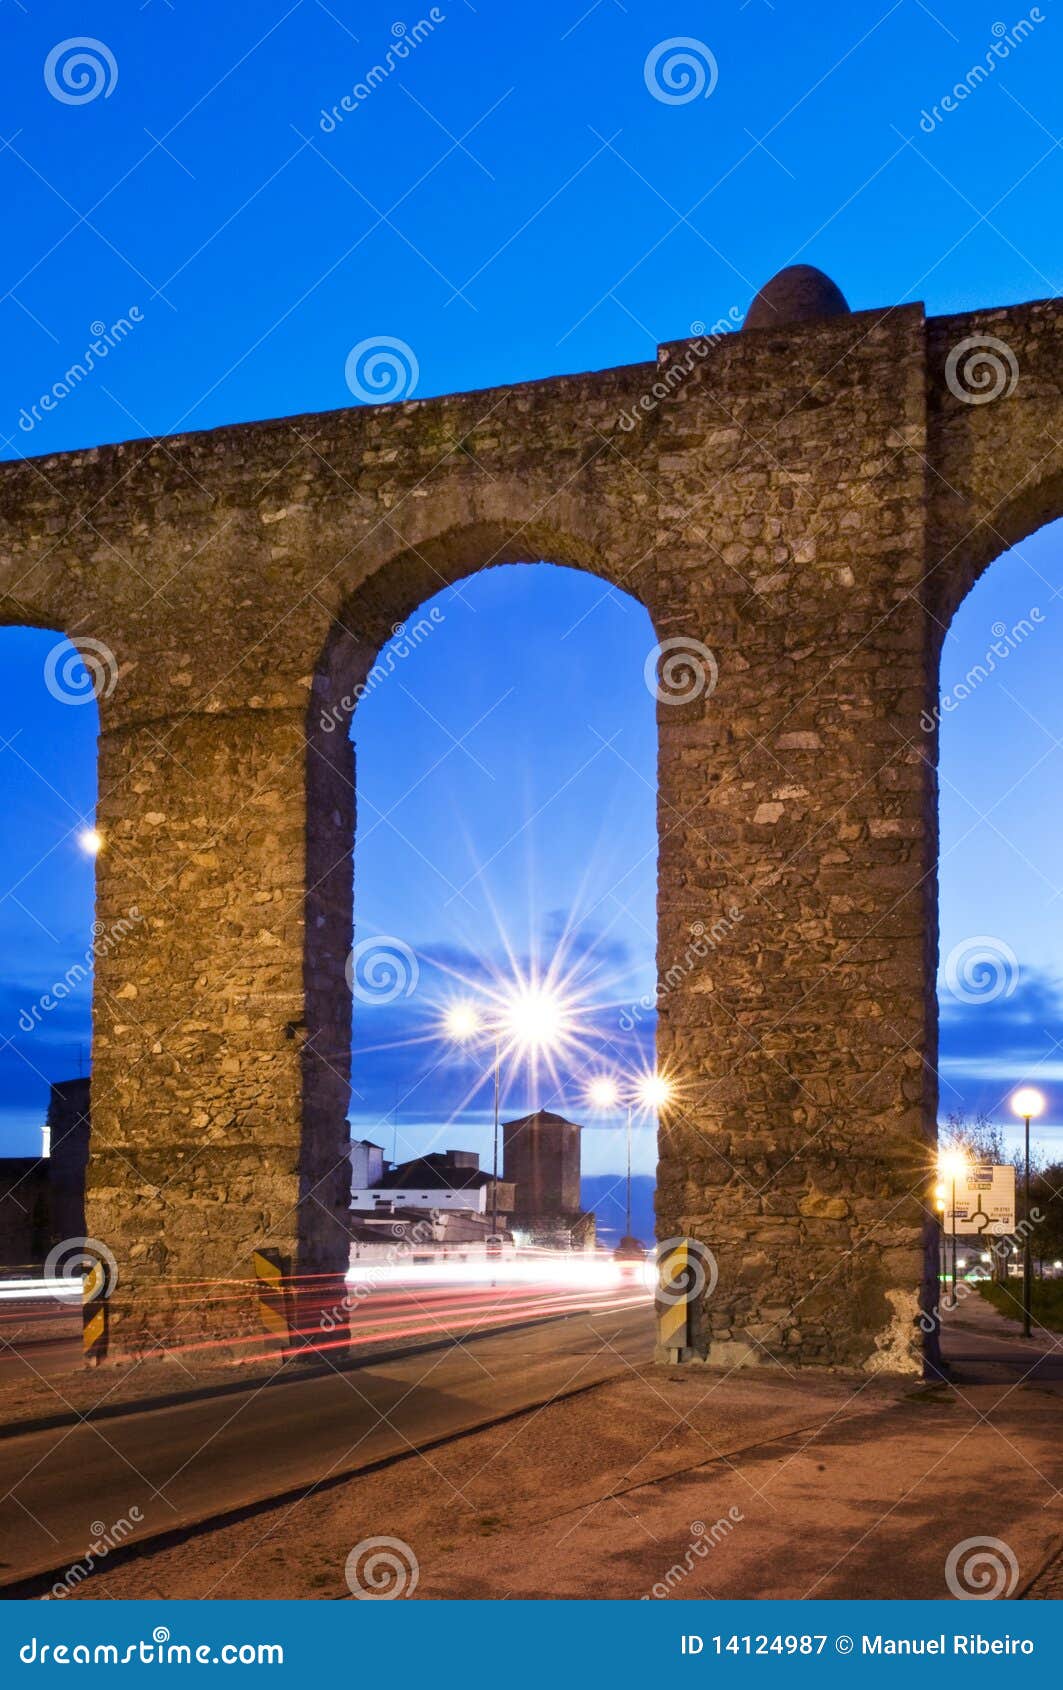 evora aqueduct by night